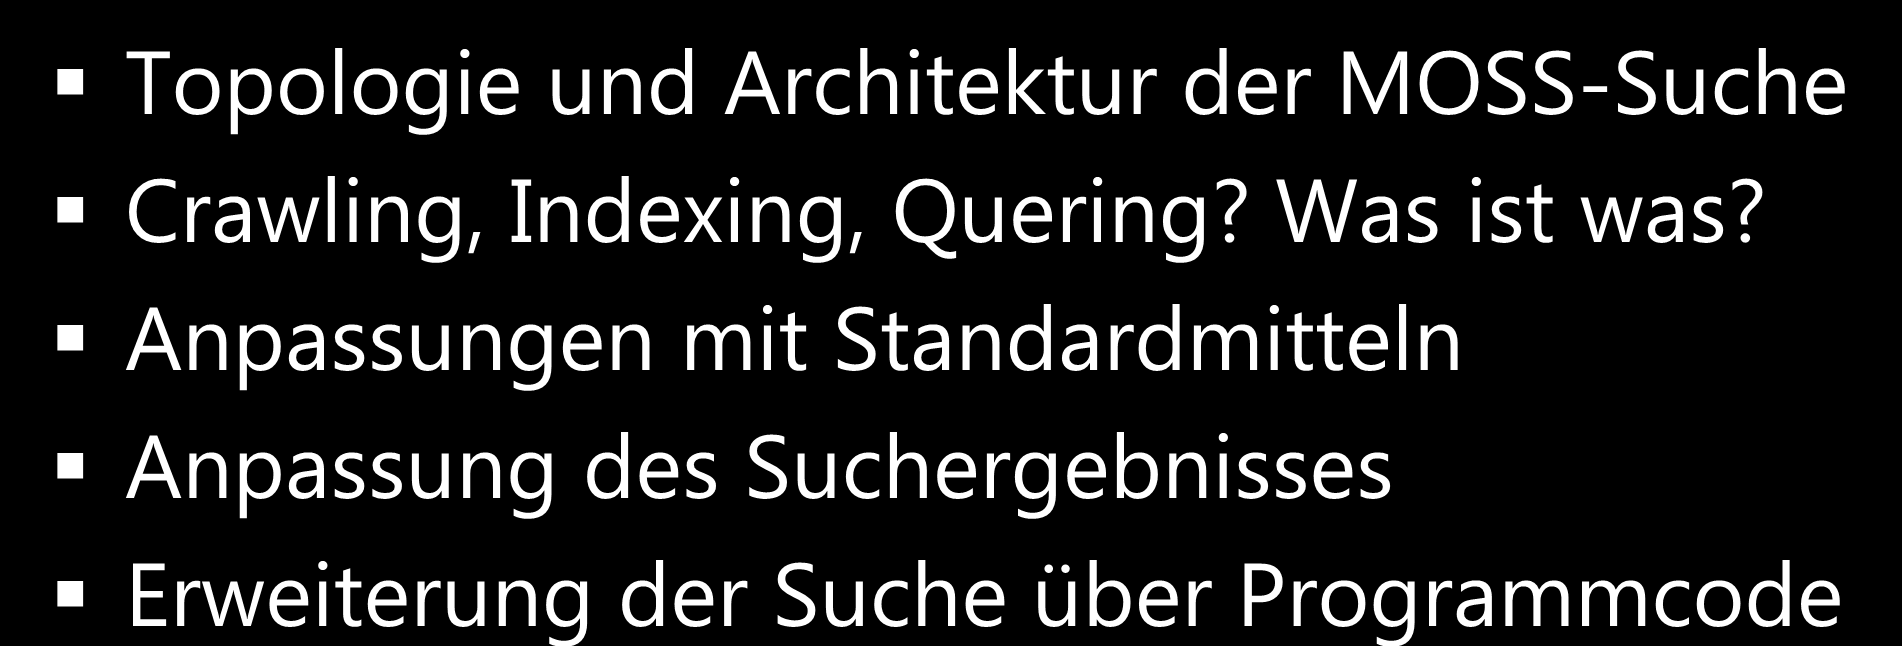 Agenda Topologie und Architektur der MOSS-Suche Crawling, Indexing, Quering? Was ist was?